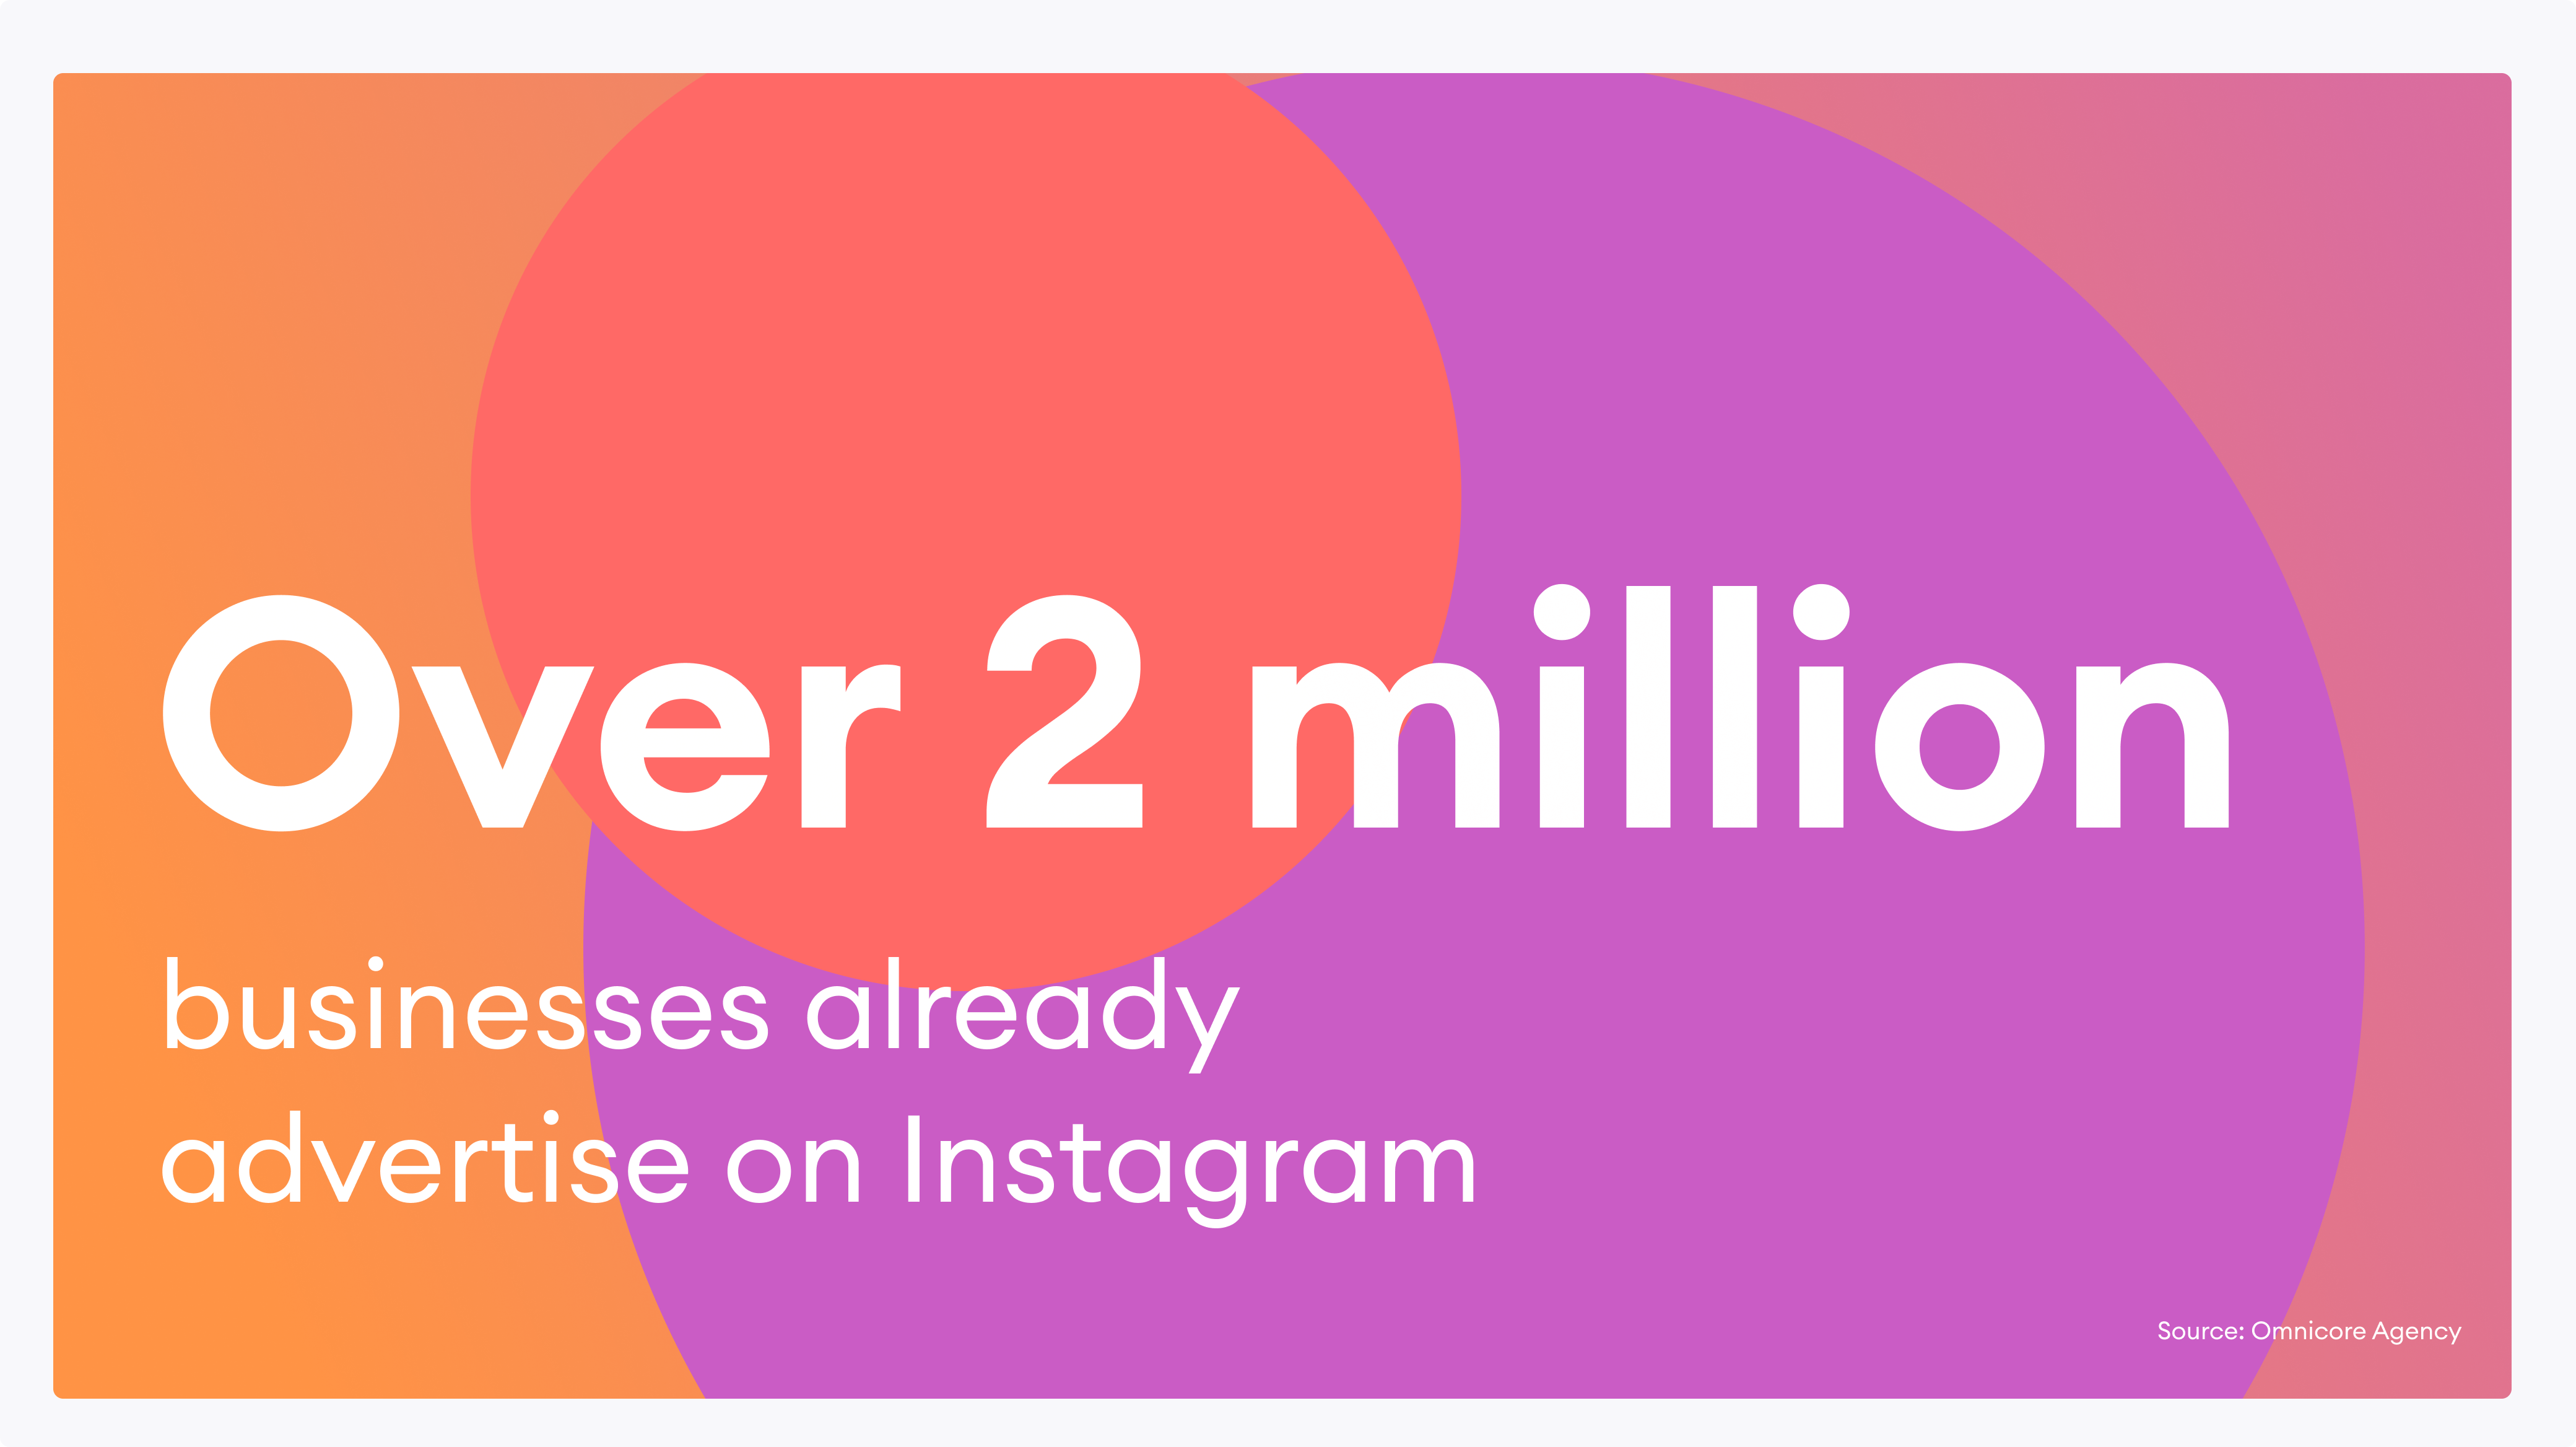 Quảng cáo trên Instagram rất phổ biến và mạnh mẽ